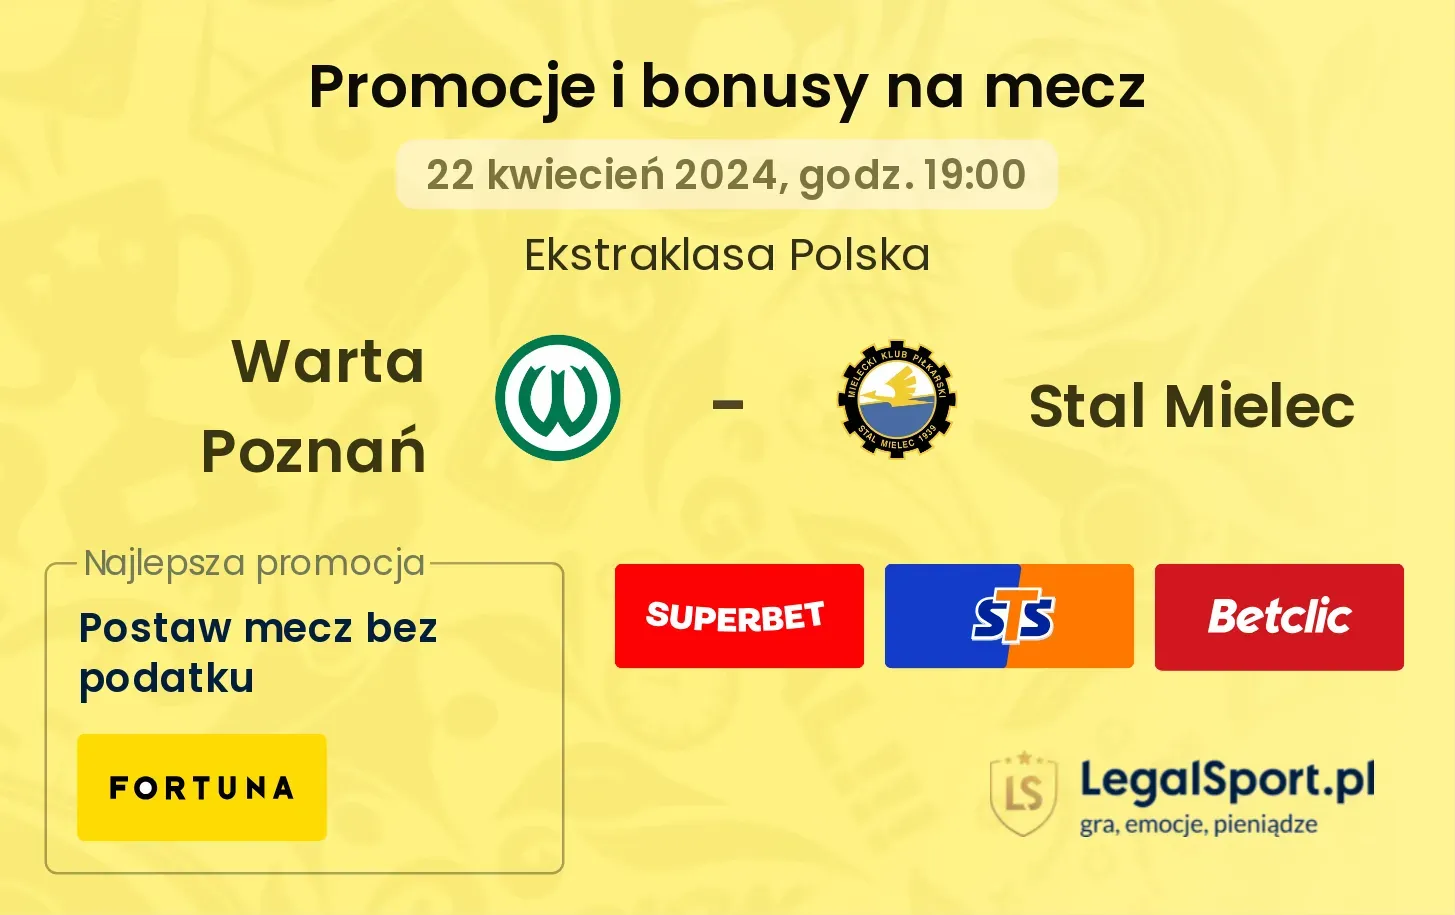 Warta Poznań - Stal Mielec promocje bonusy na mecz